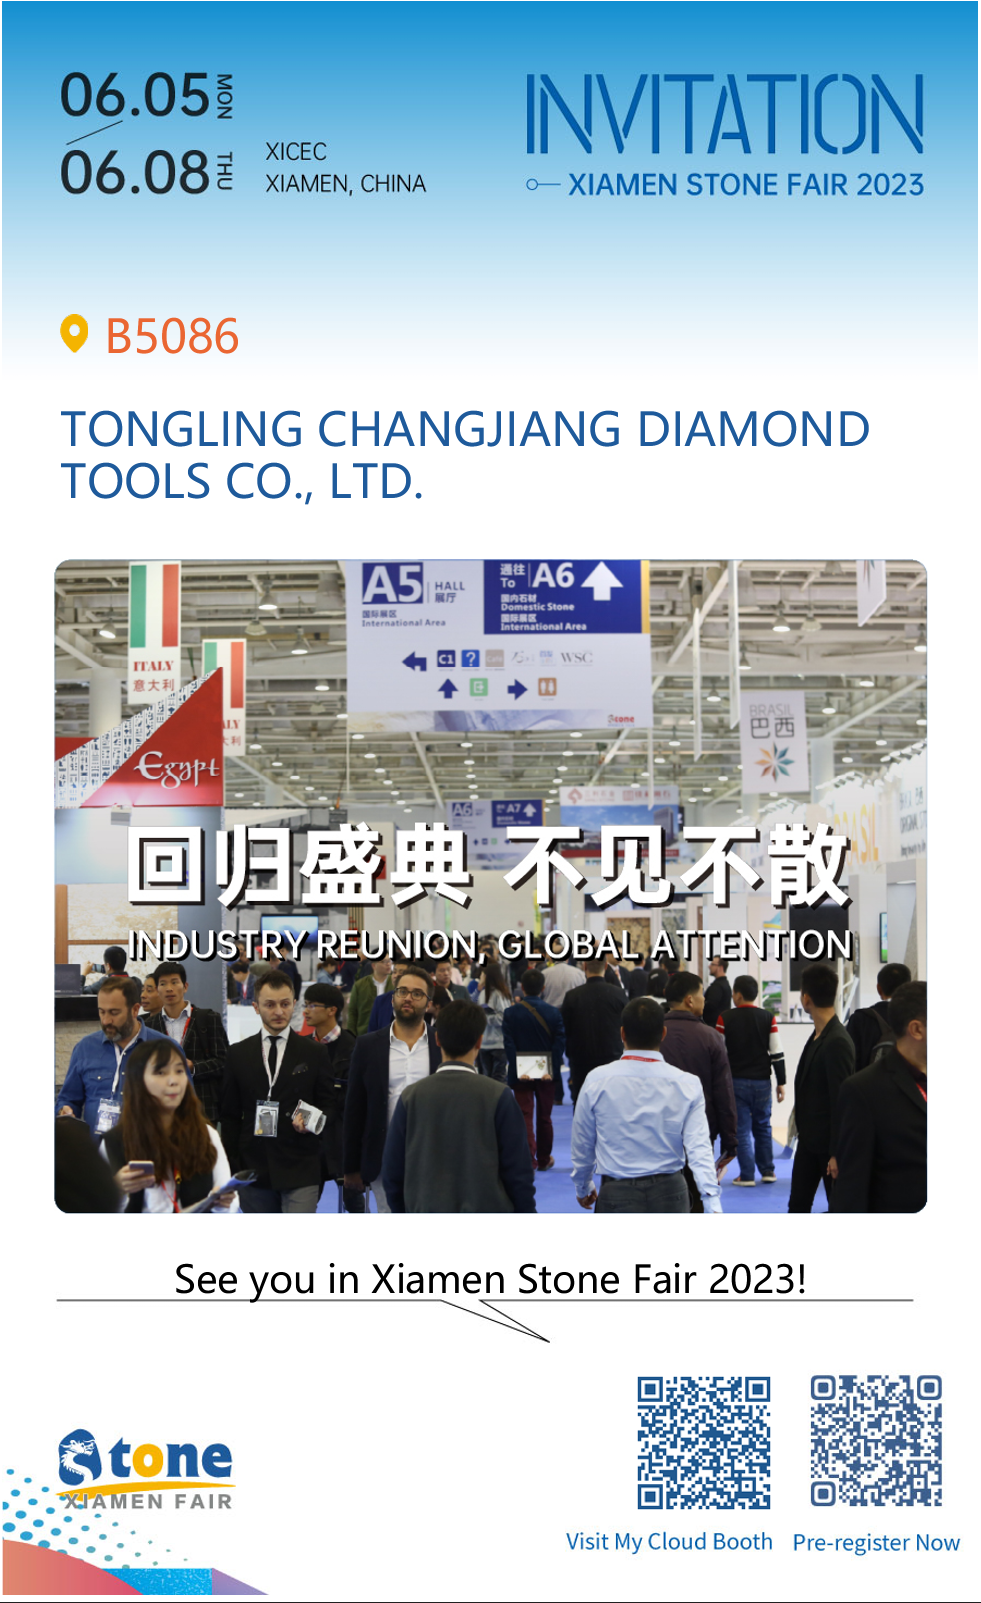 See you in Xiamen Stone Fair 2023!